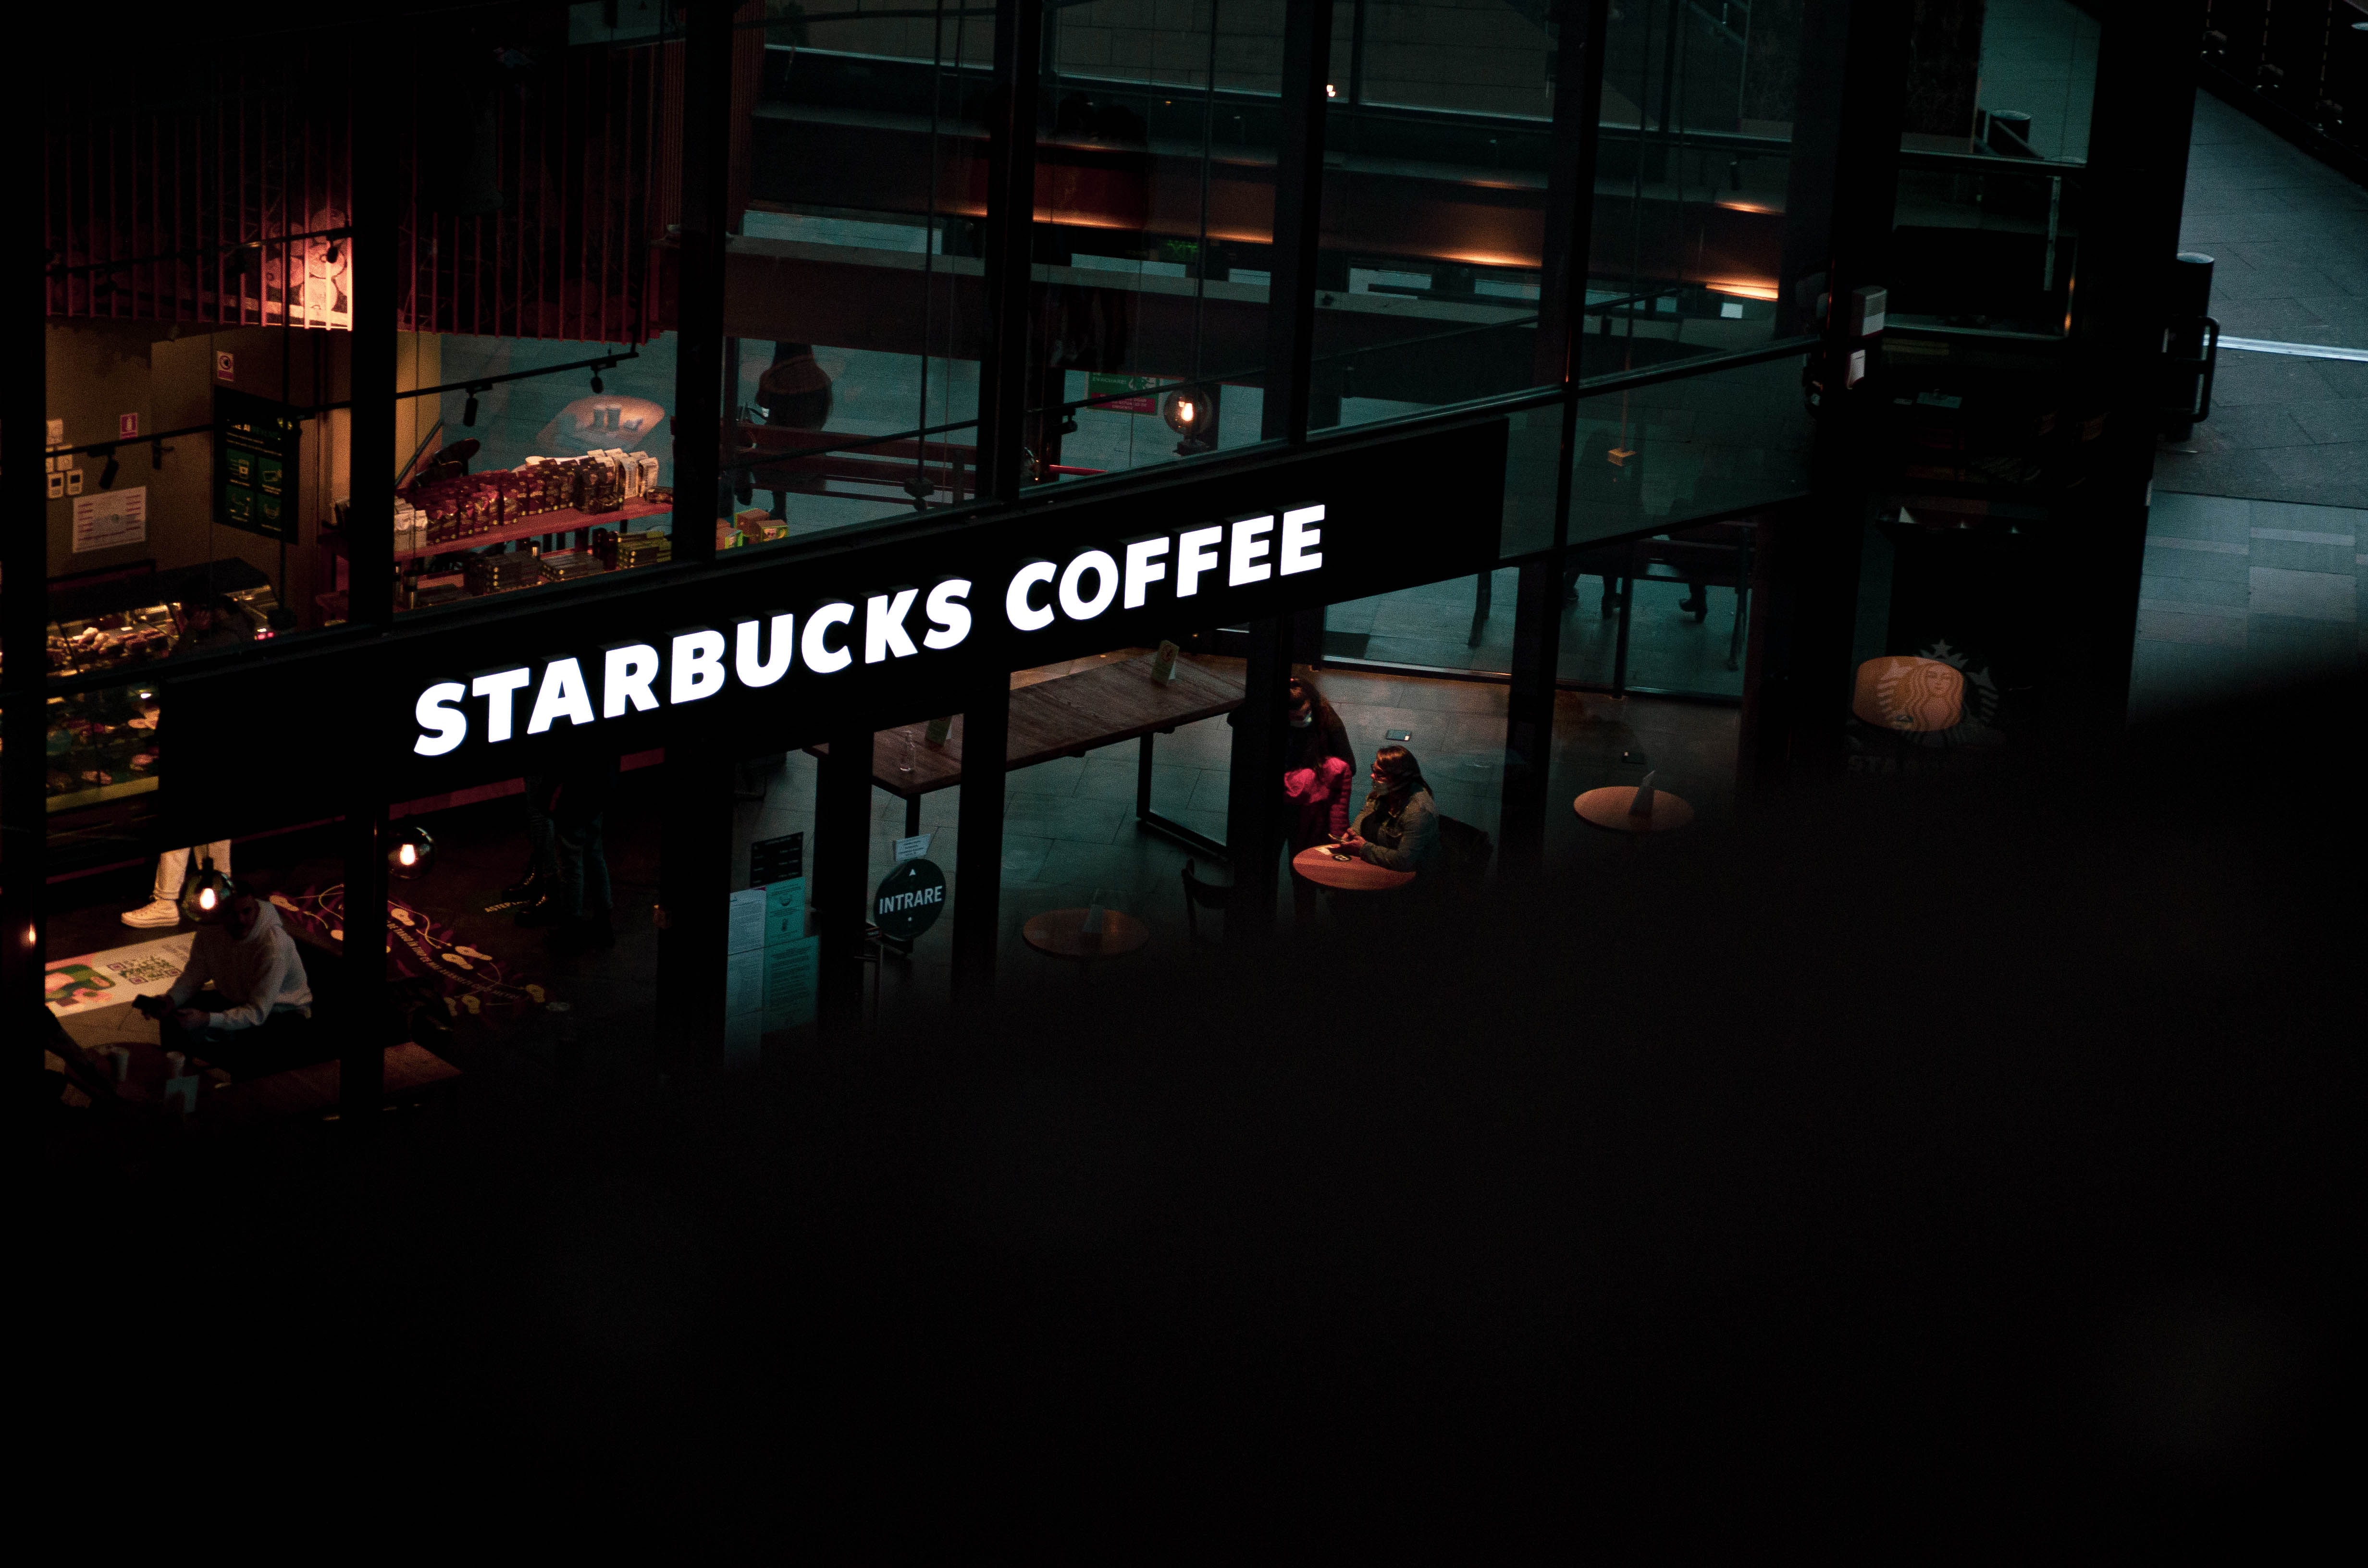 New name, logo for Russian "Starbucks"